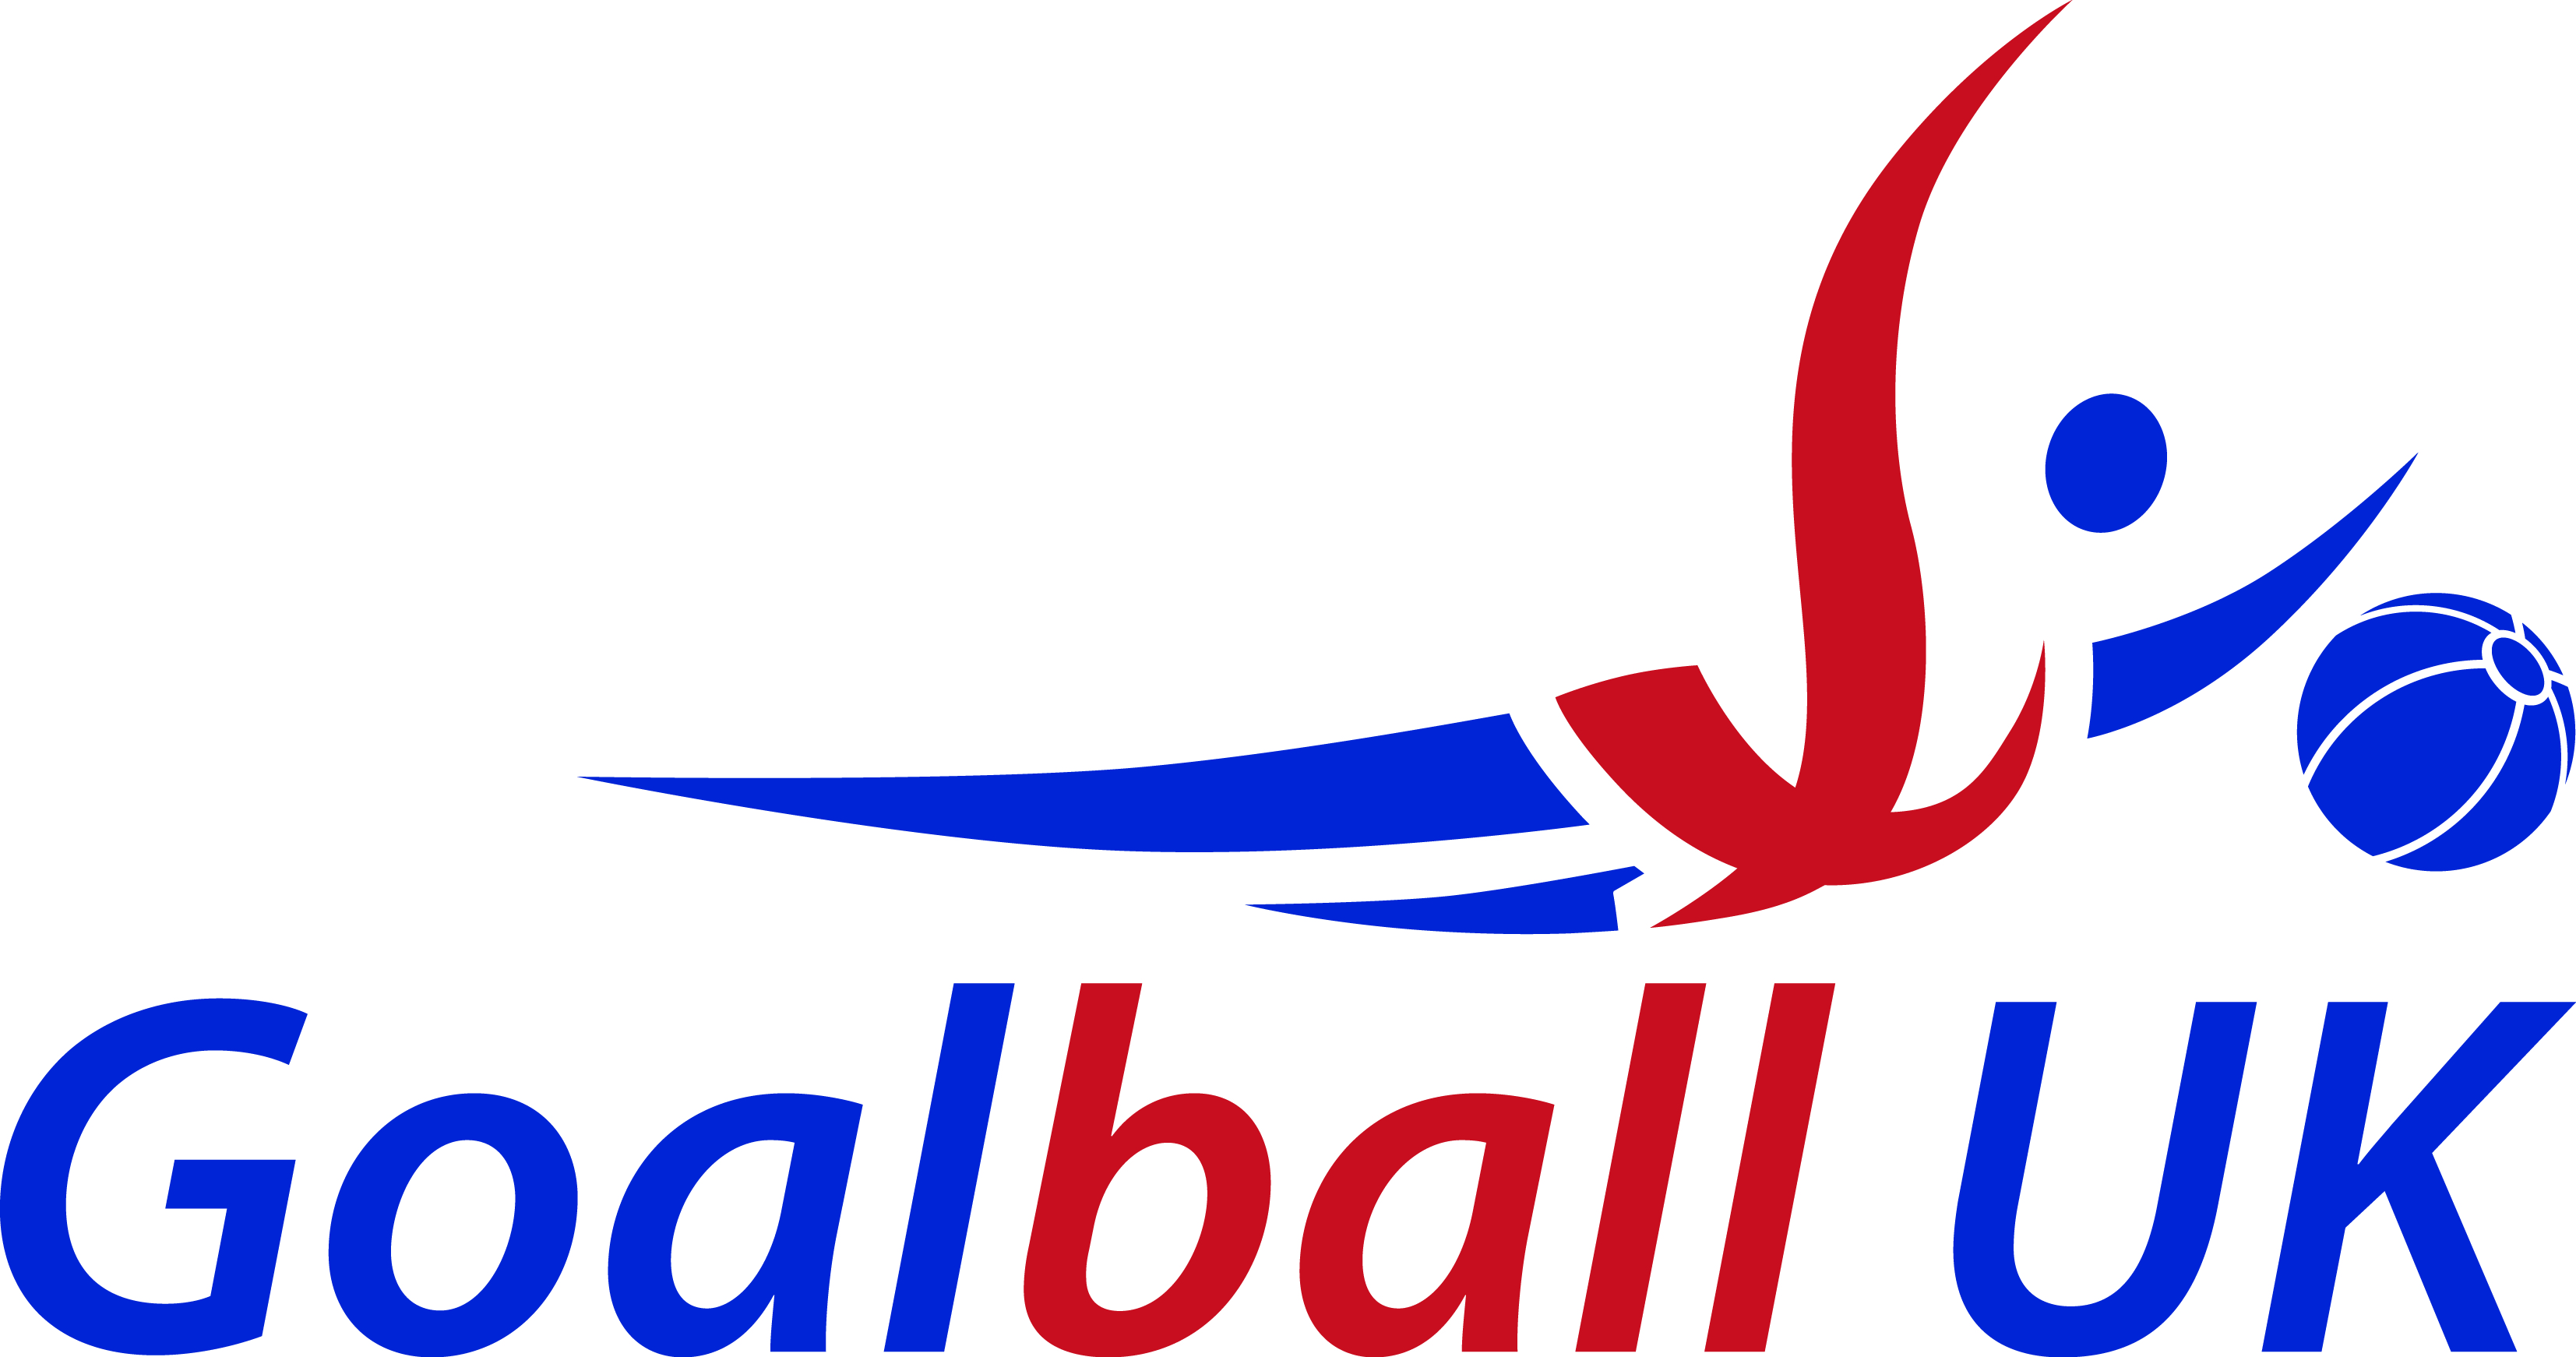 Goalball UK logo